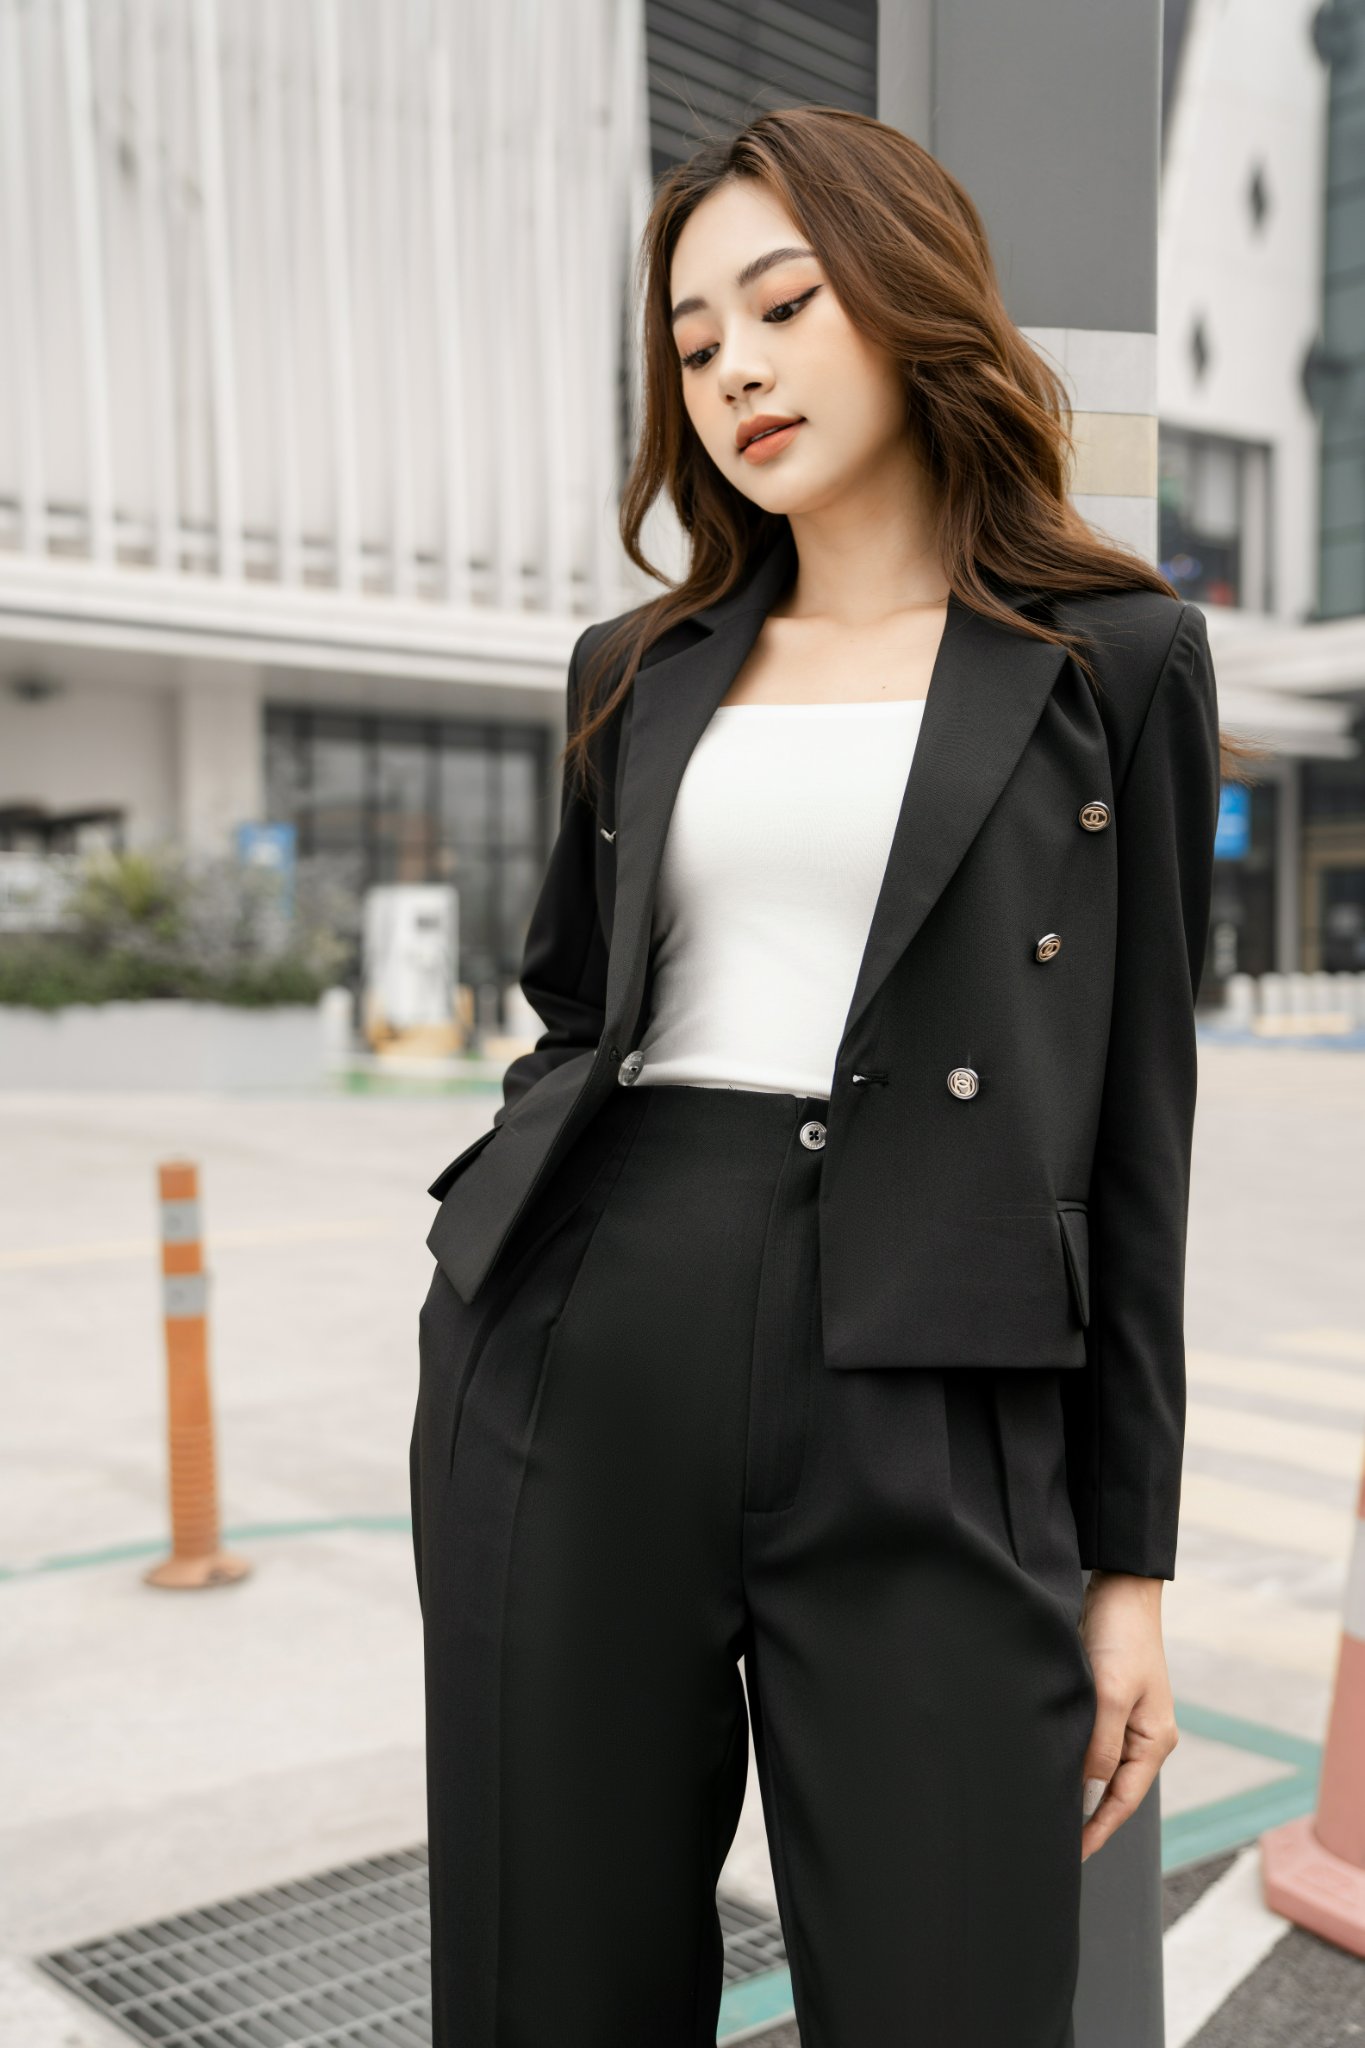 Áo vest đồng phục nữ công sở cao cấp màu xanh đen kết hợp áo trắng